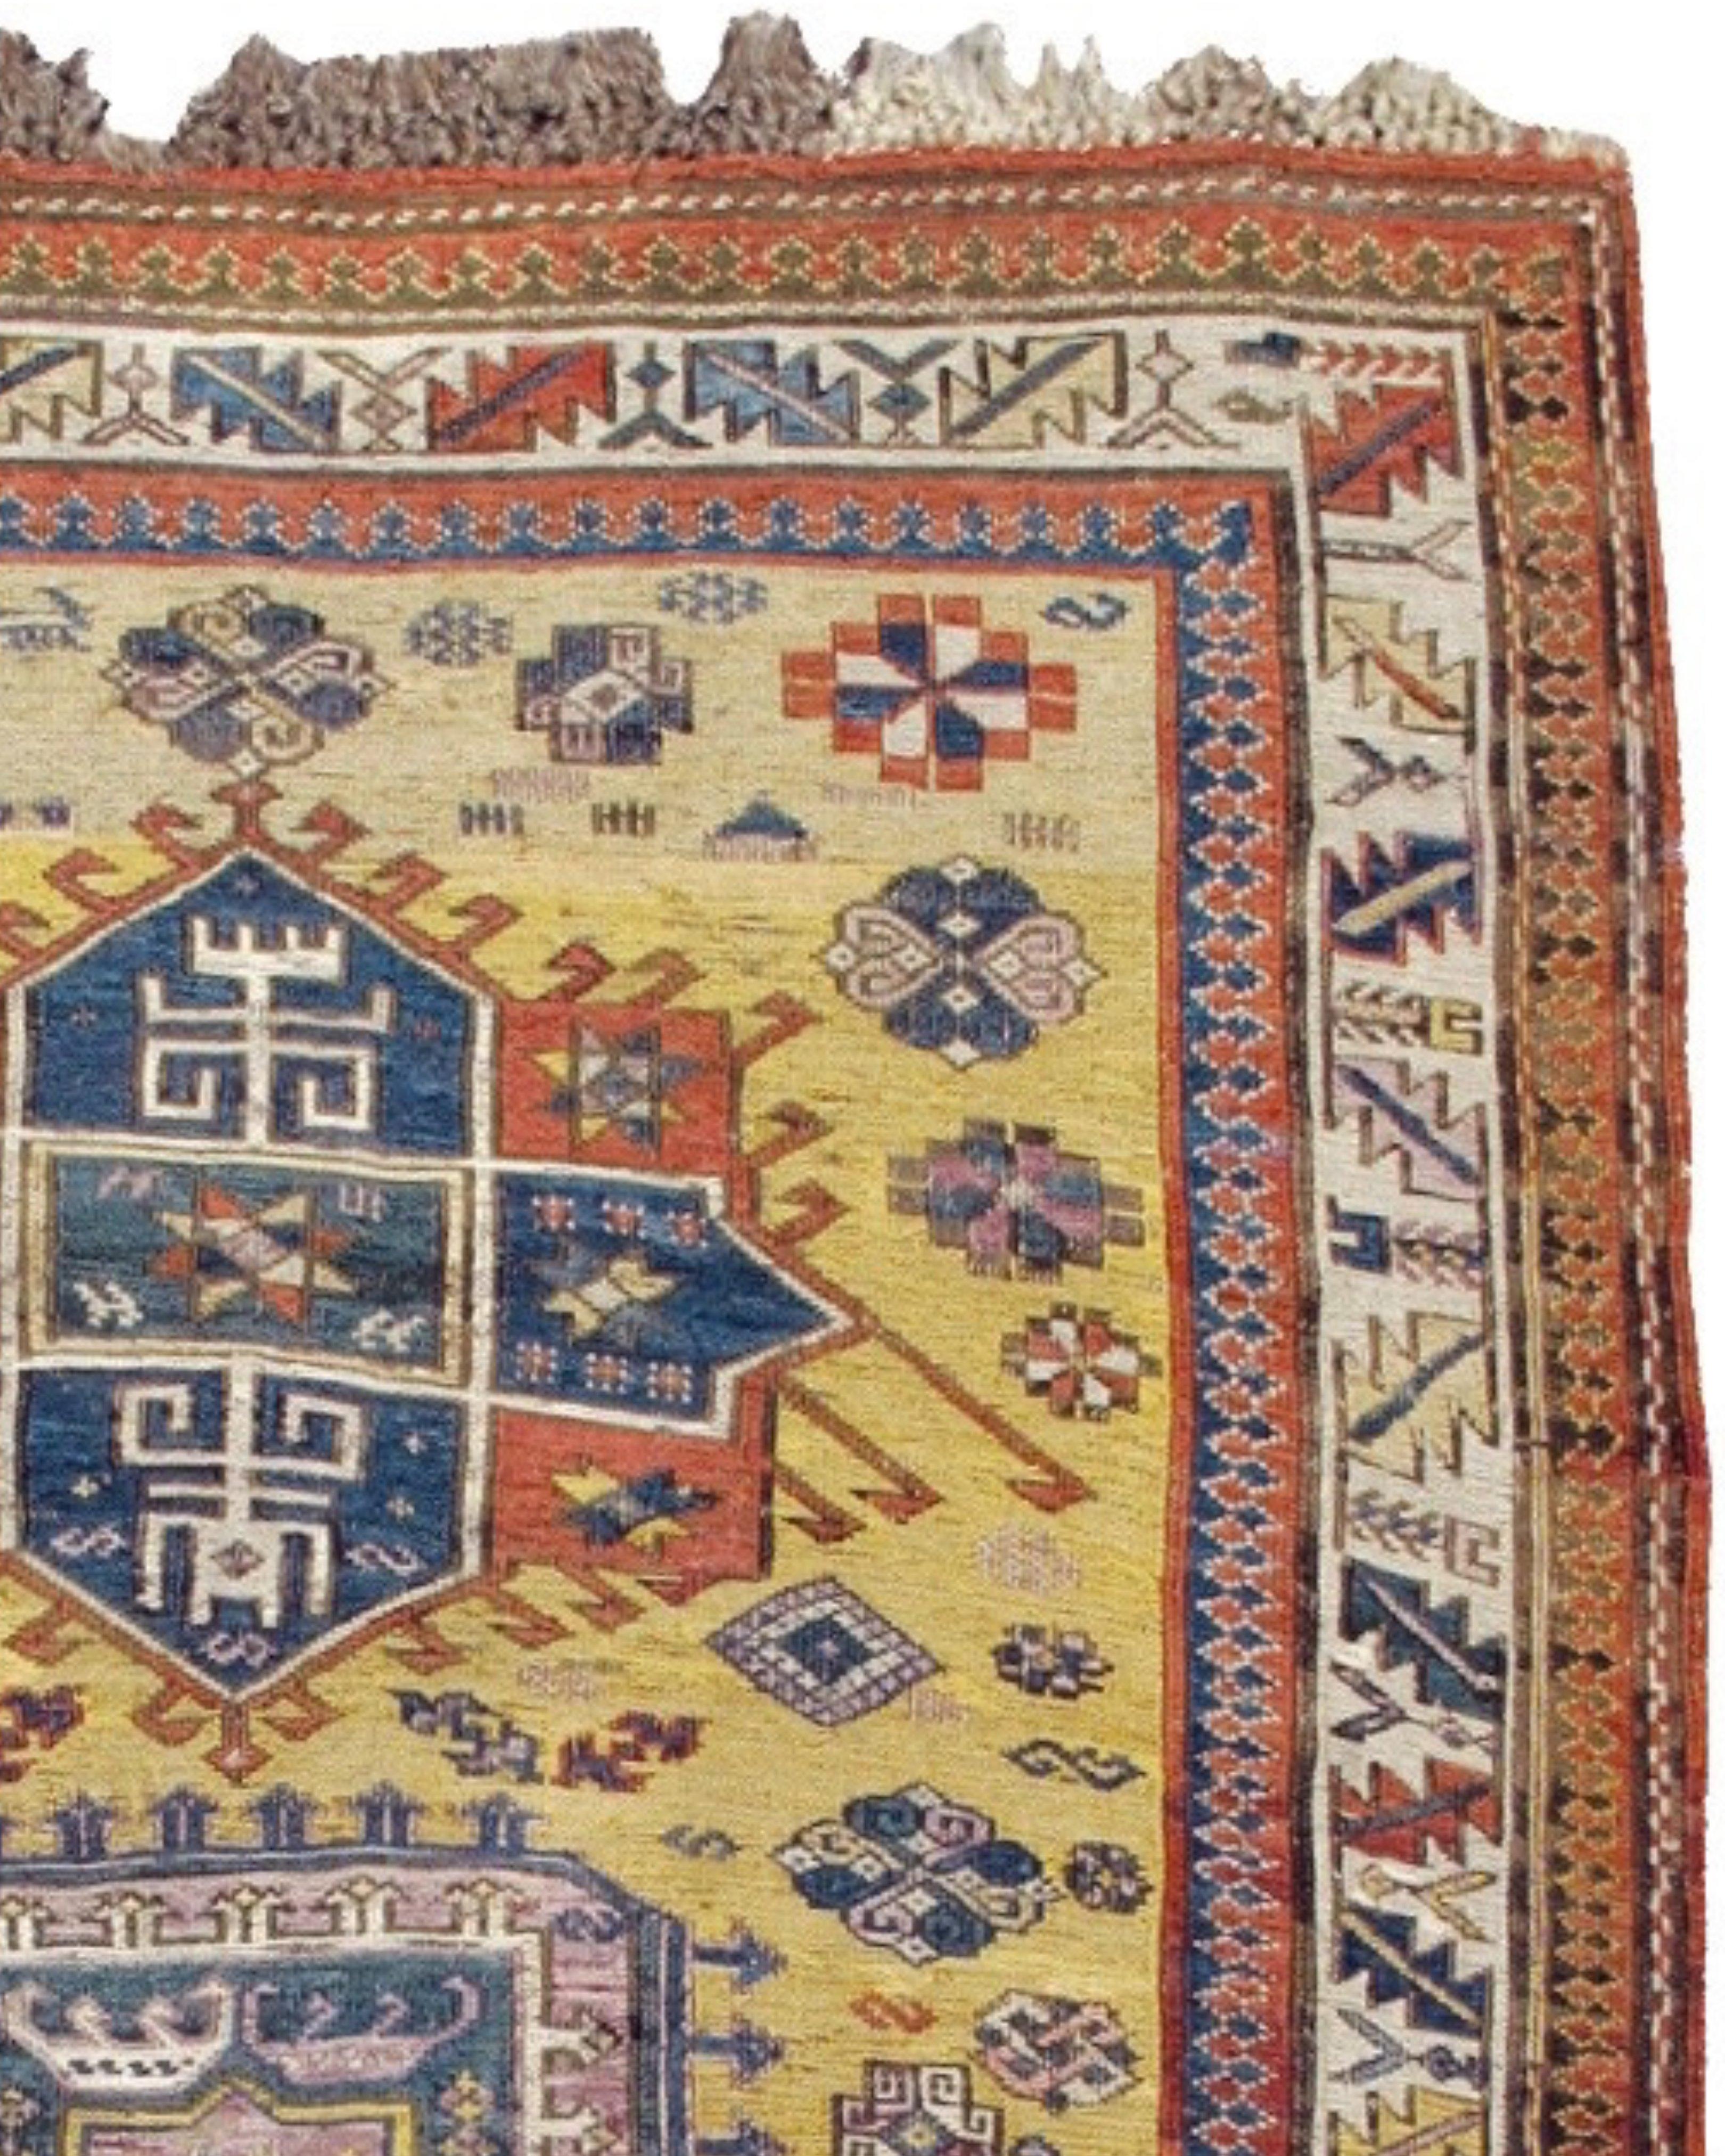 Antiker kaukasischer Sumak-Teppich, spätes 19. Jahrhundert

Zusätzliche Informationen:
Abmessungen: 3'4